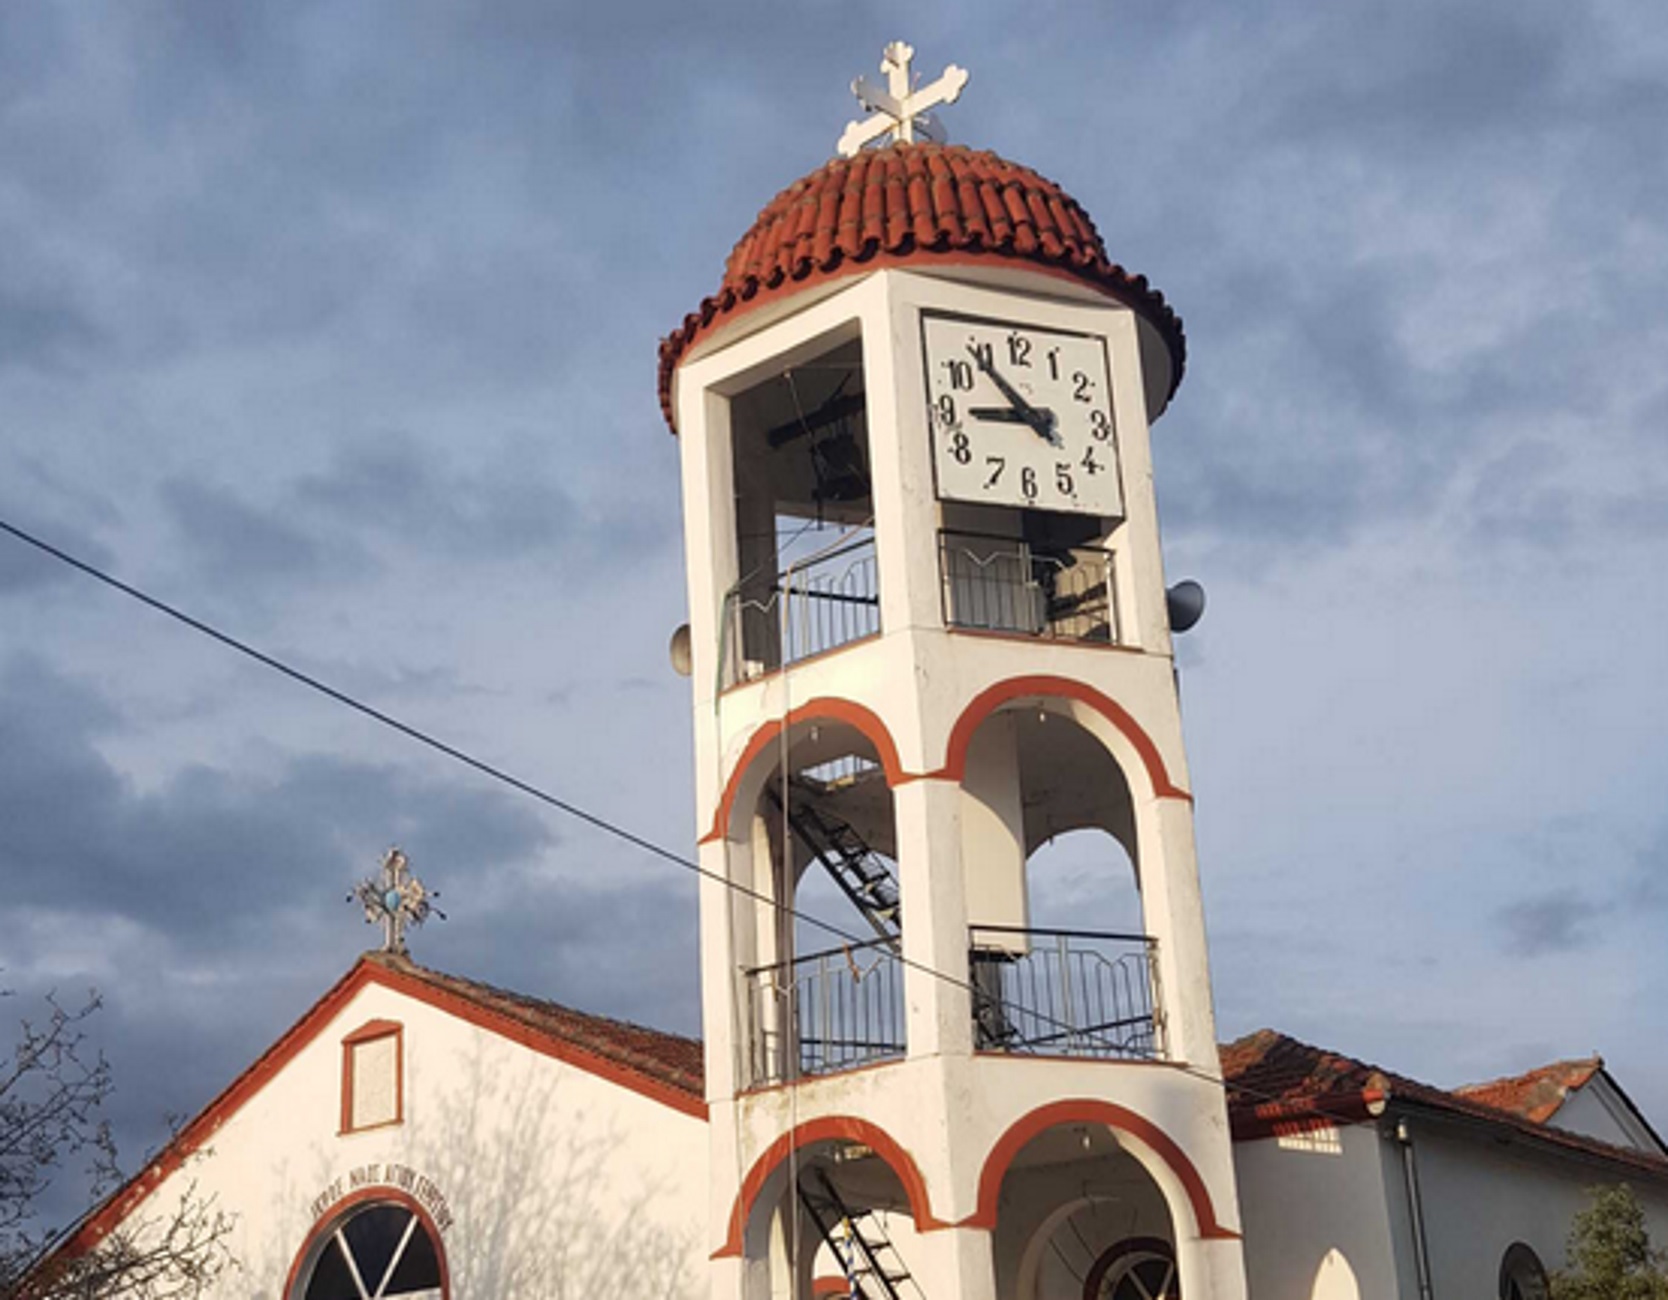 Αμφίπολη: Σε λειτουργία μετά από 20 και πλέον χρόνια το ρολόι στην εκκλησία του Αγίου Γεωργίου